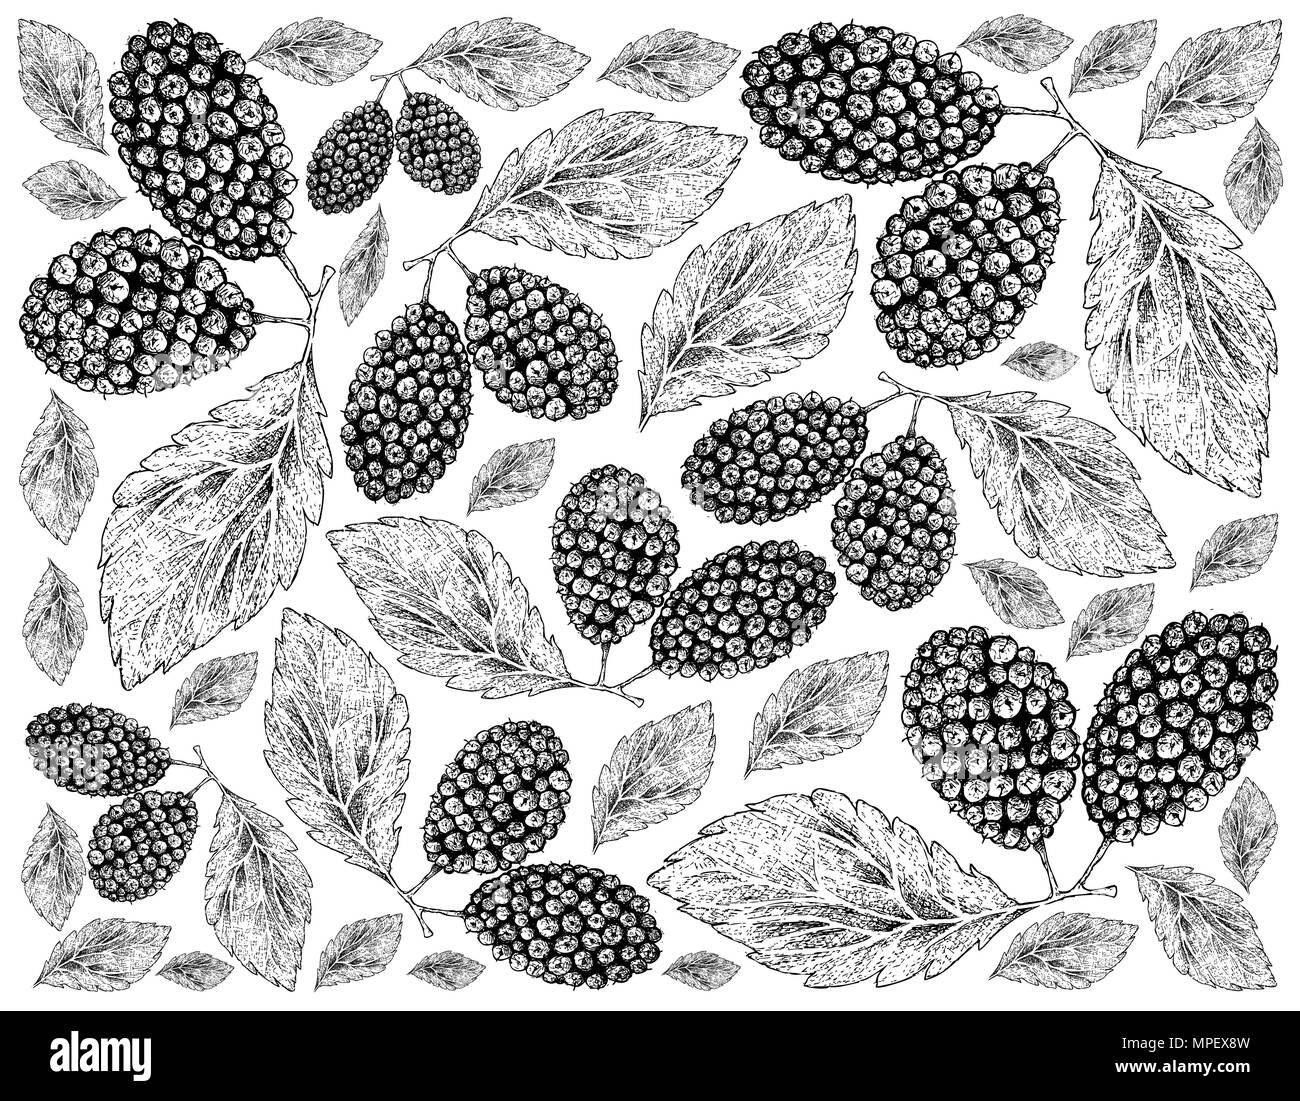 Tropische Früchte, Illustration Wallpaper von Hand gezeichnete Skizze frischen süßen schwarzen Maulbeeren oder Morus nigra Früchte isoliert auf weißem Hintergrund. Stockfoto